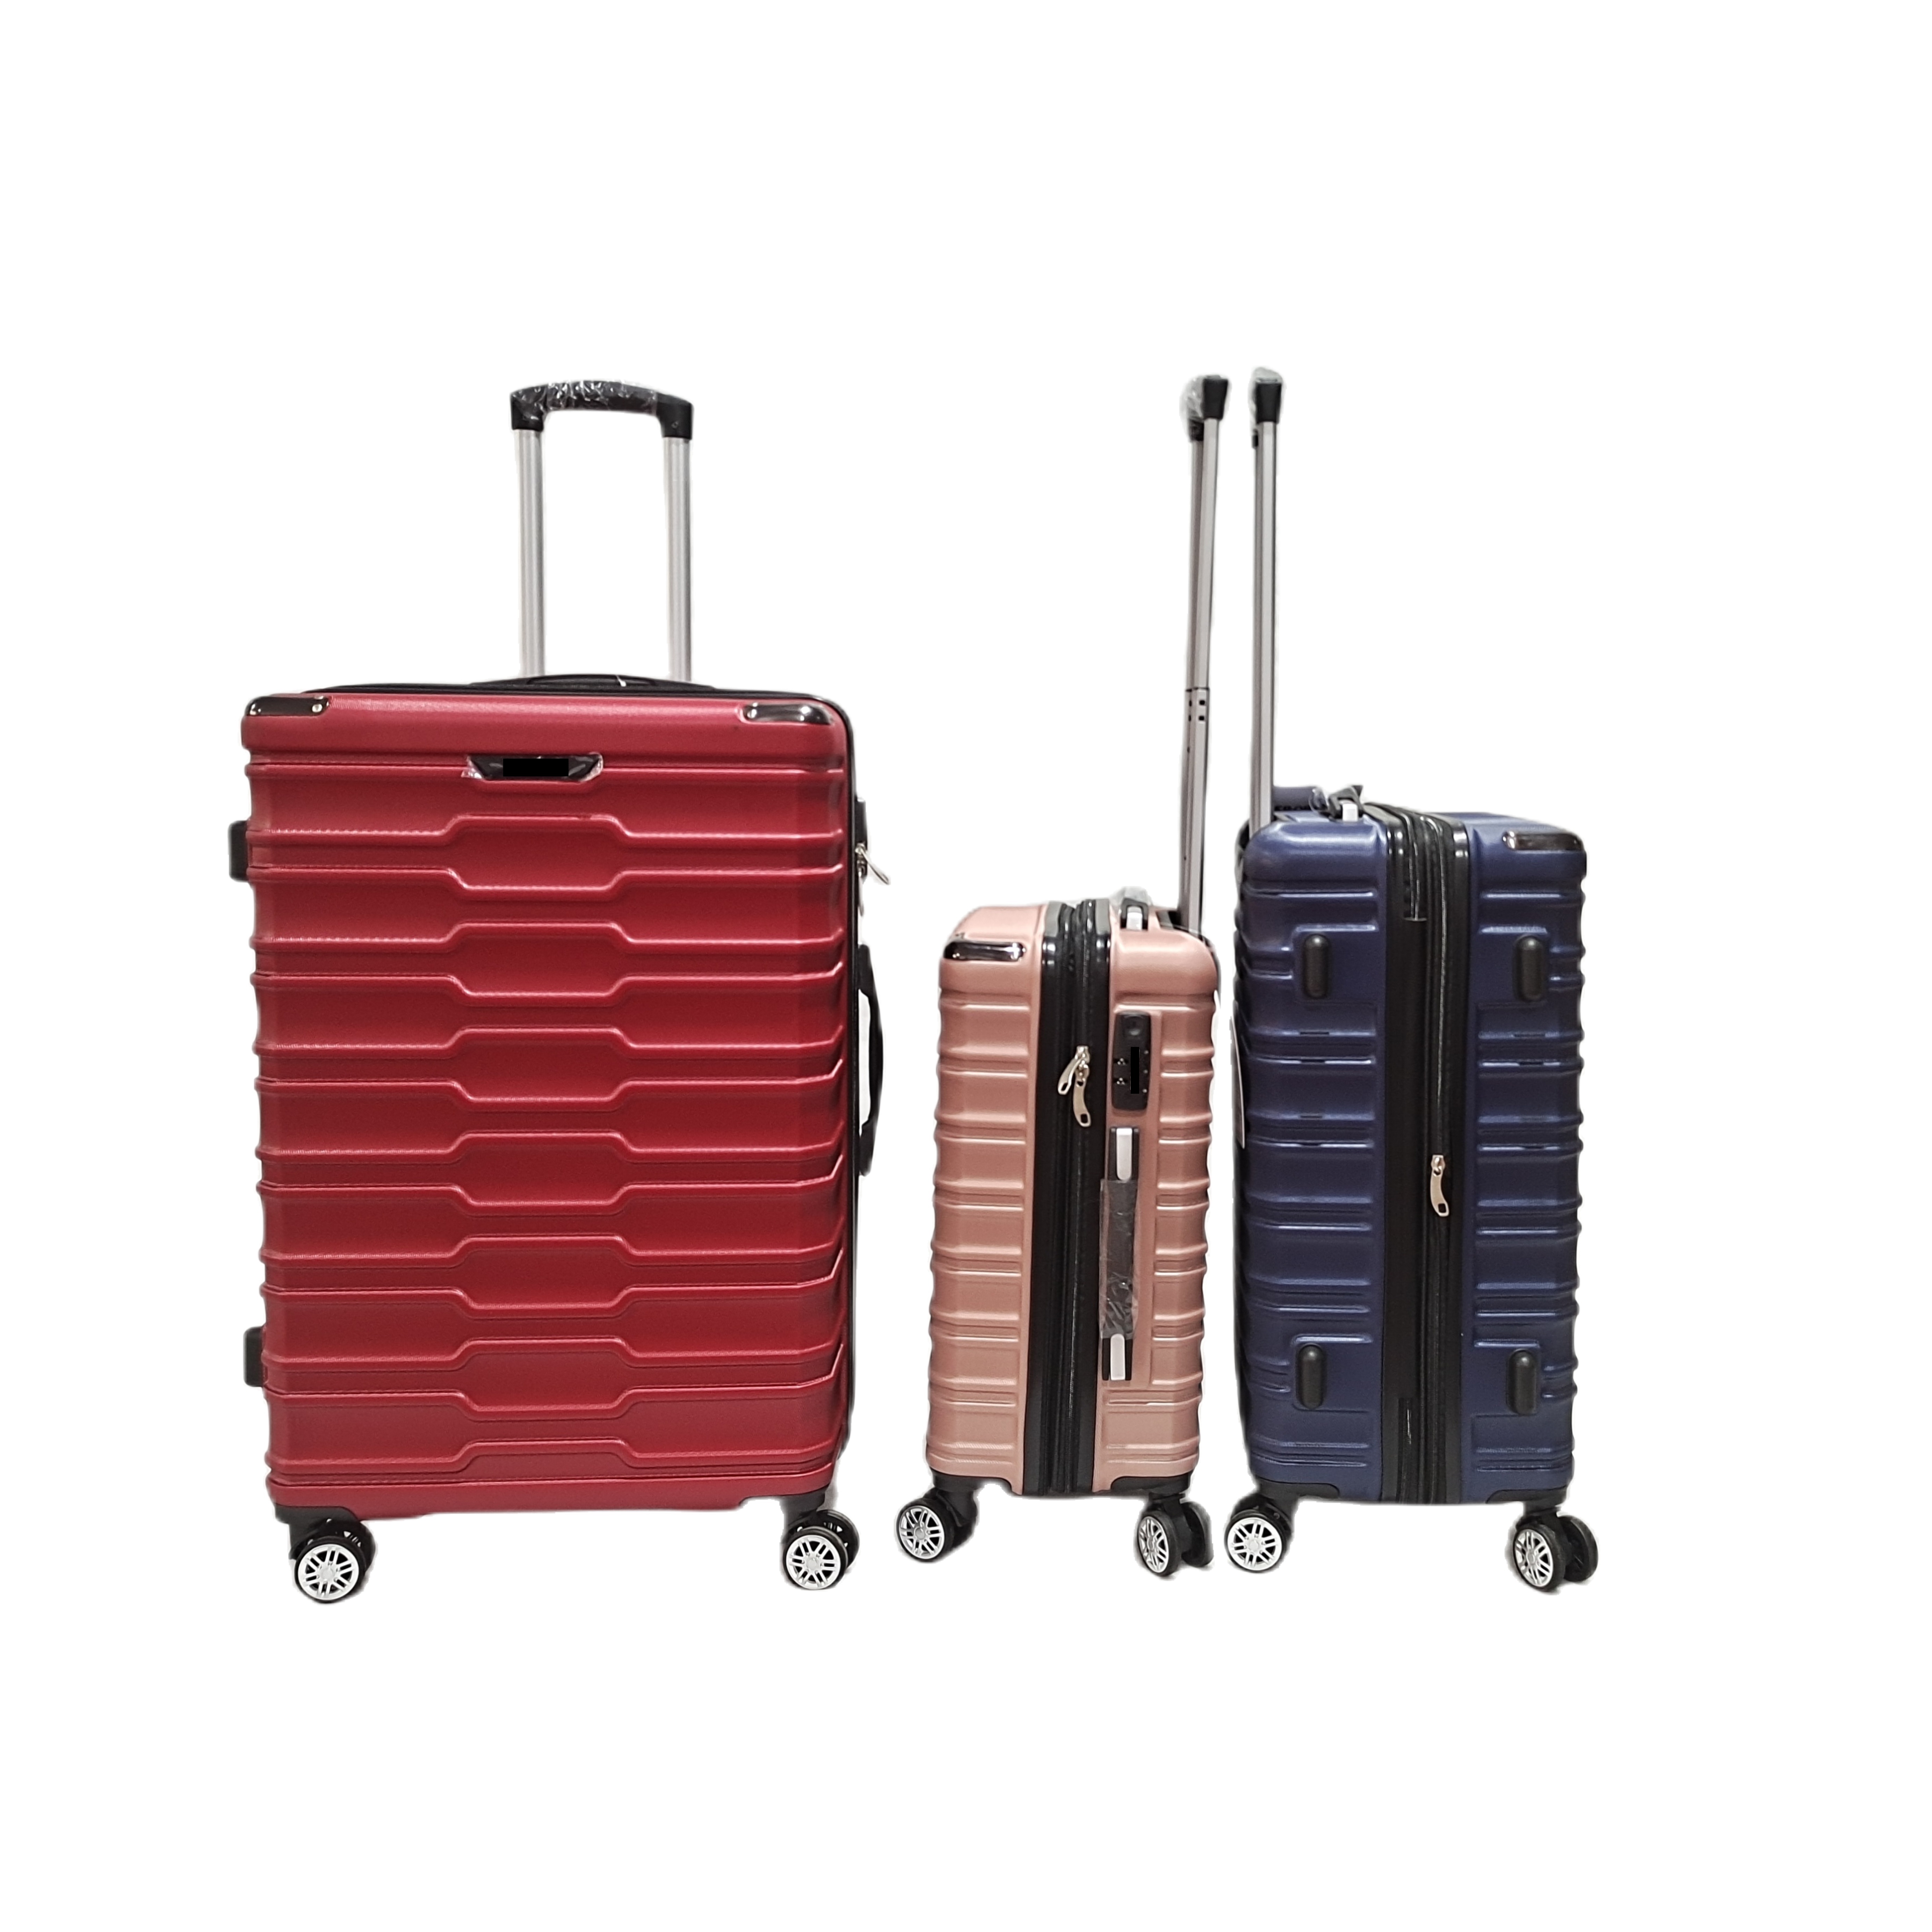 फैशन एबीएस यात्रा सामान सेट बिजनेस ट्रॉली सूटकेस